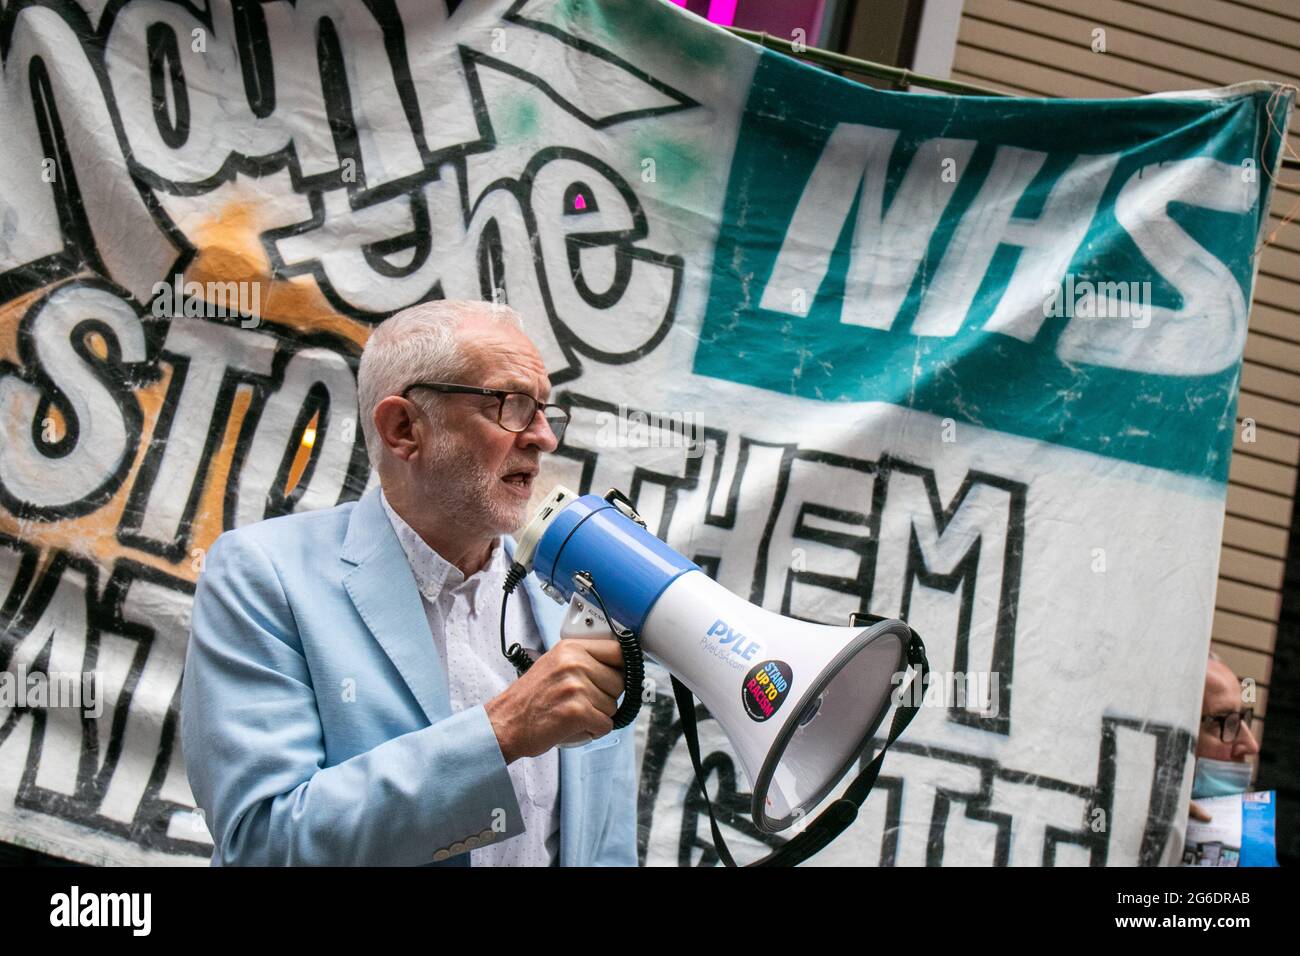 LONDON, ENGLAND, 05 2021. JULI, ehemaliger Labour-Führer Jeremy Corbyn bei der Kundgebung gegen Privatisierung und NHS-Gehaltserhöhung vor dem Londoner Gesundheitsministerium Kredit: Lucy North/Alamy Live News Stockfoto